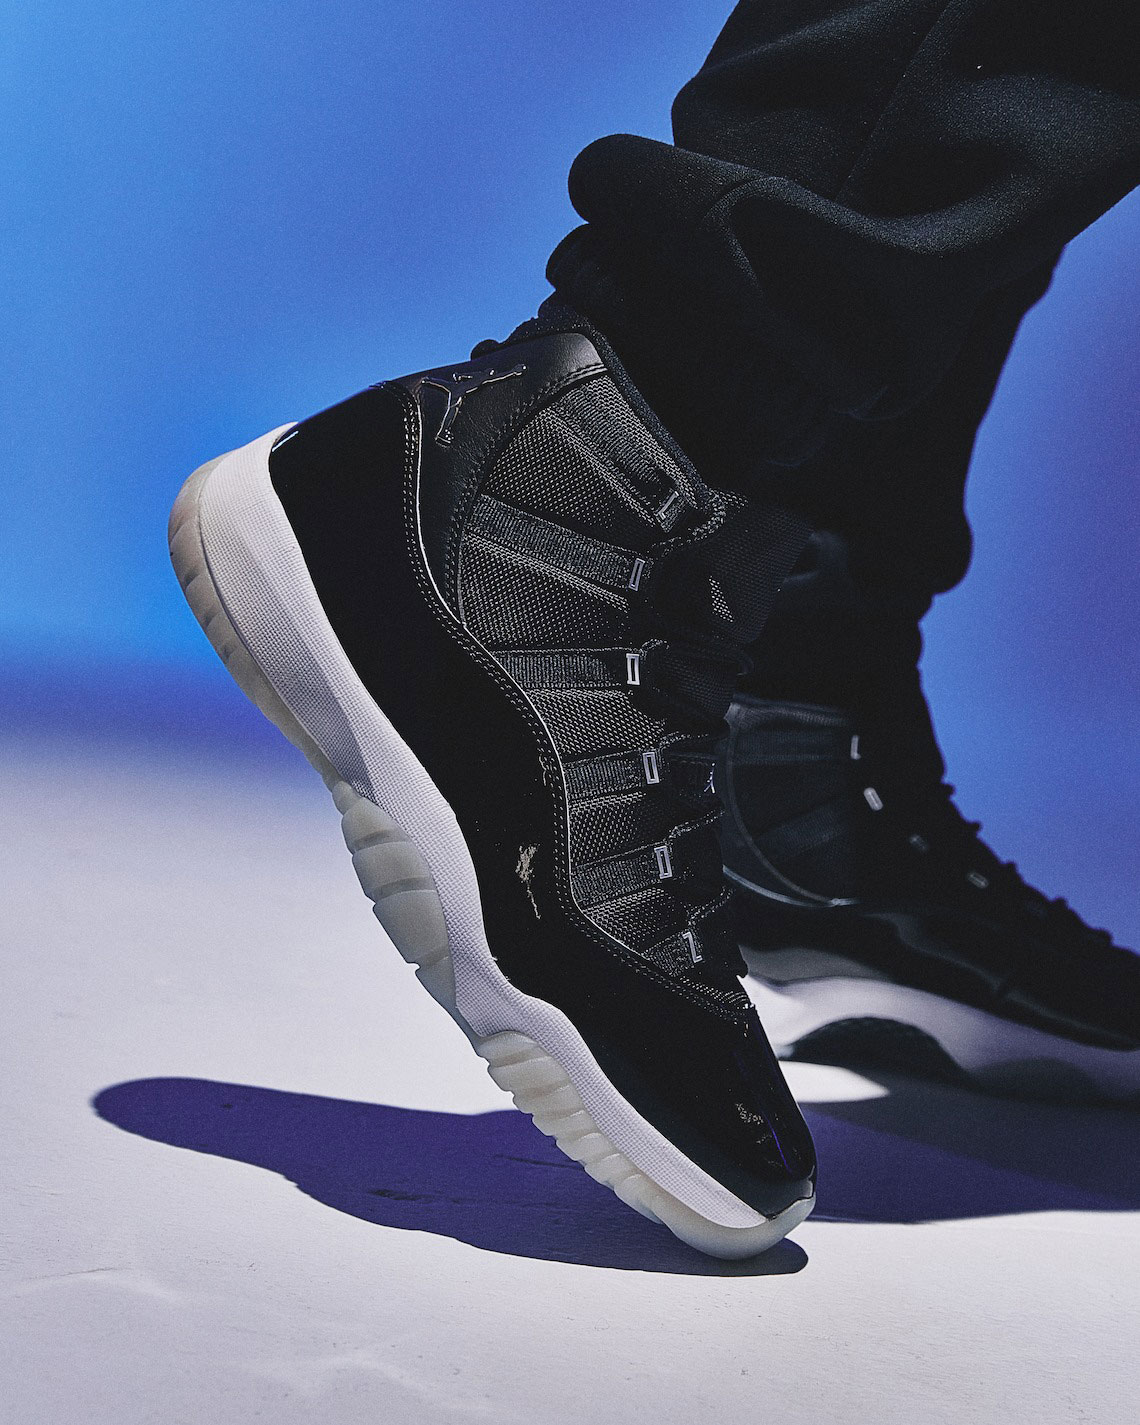 Air Jordan 11 Jubilee On Feet | SneakerFits.com